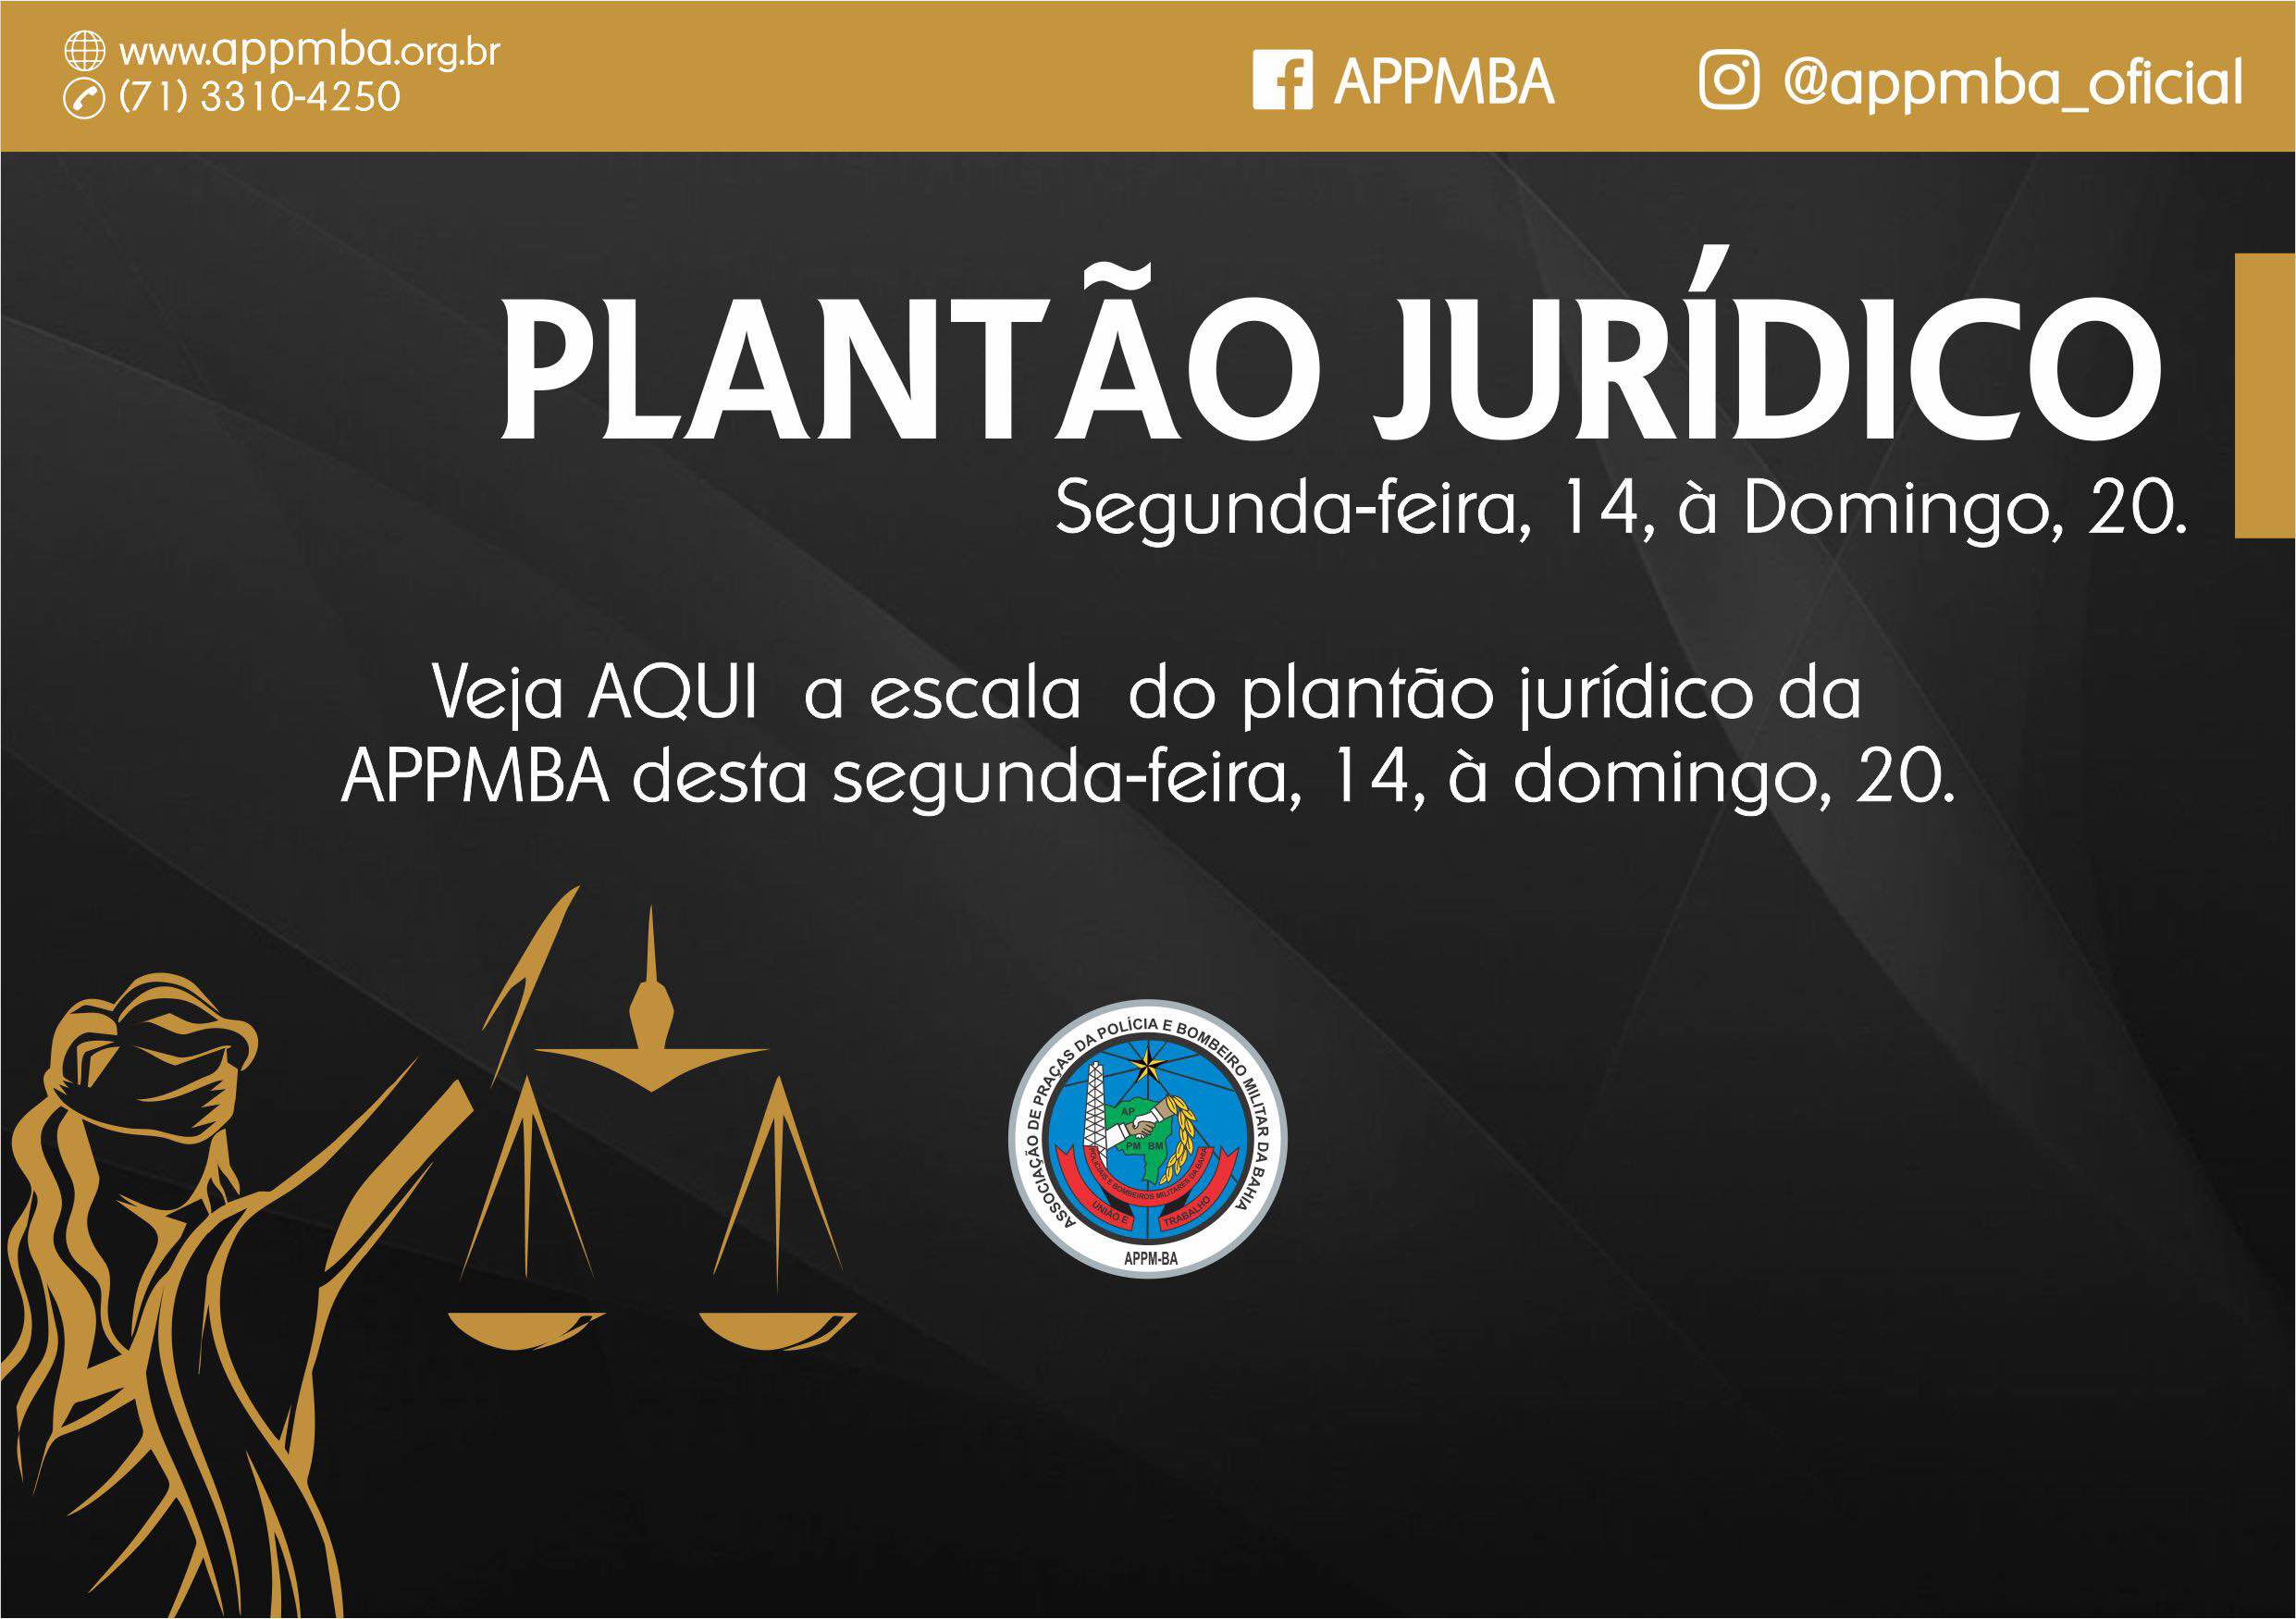 Plantão Jurídico APPM-BA, dias 14 à 20/5/2018